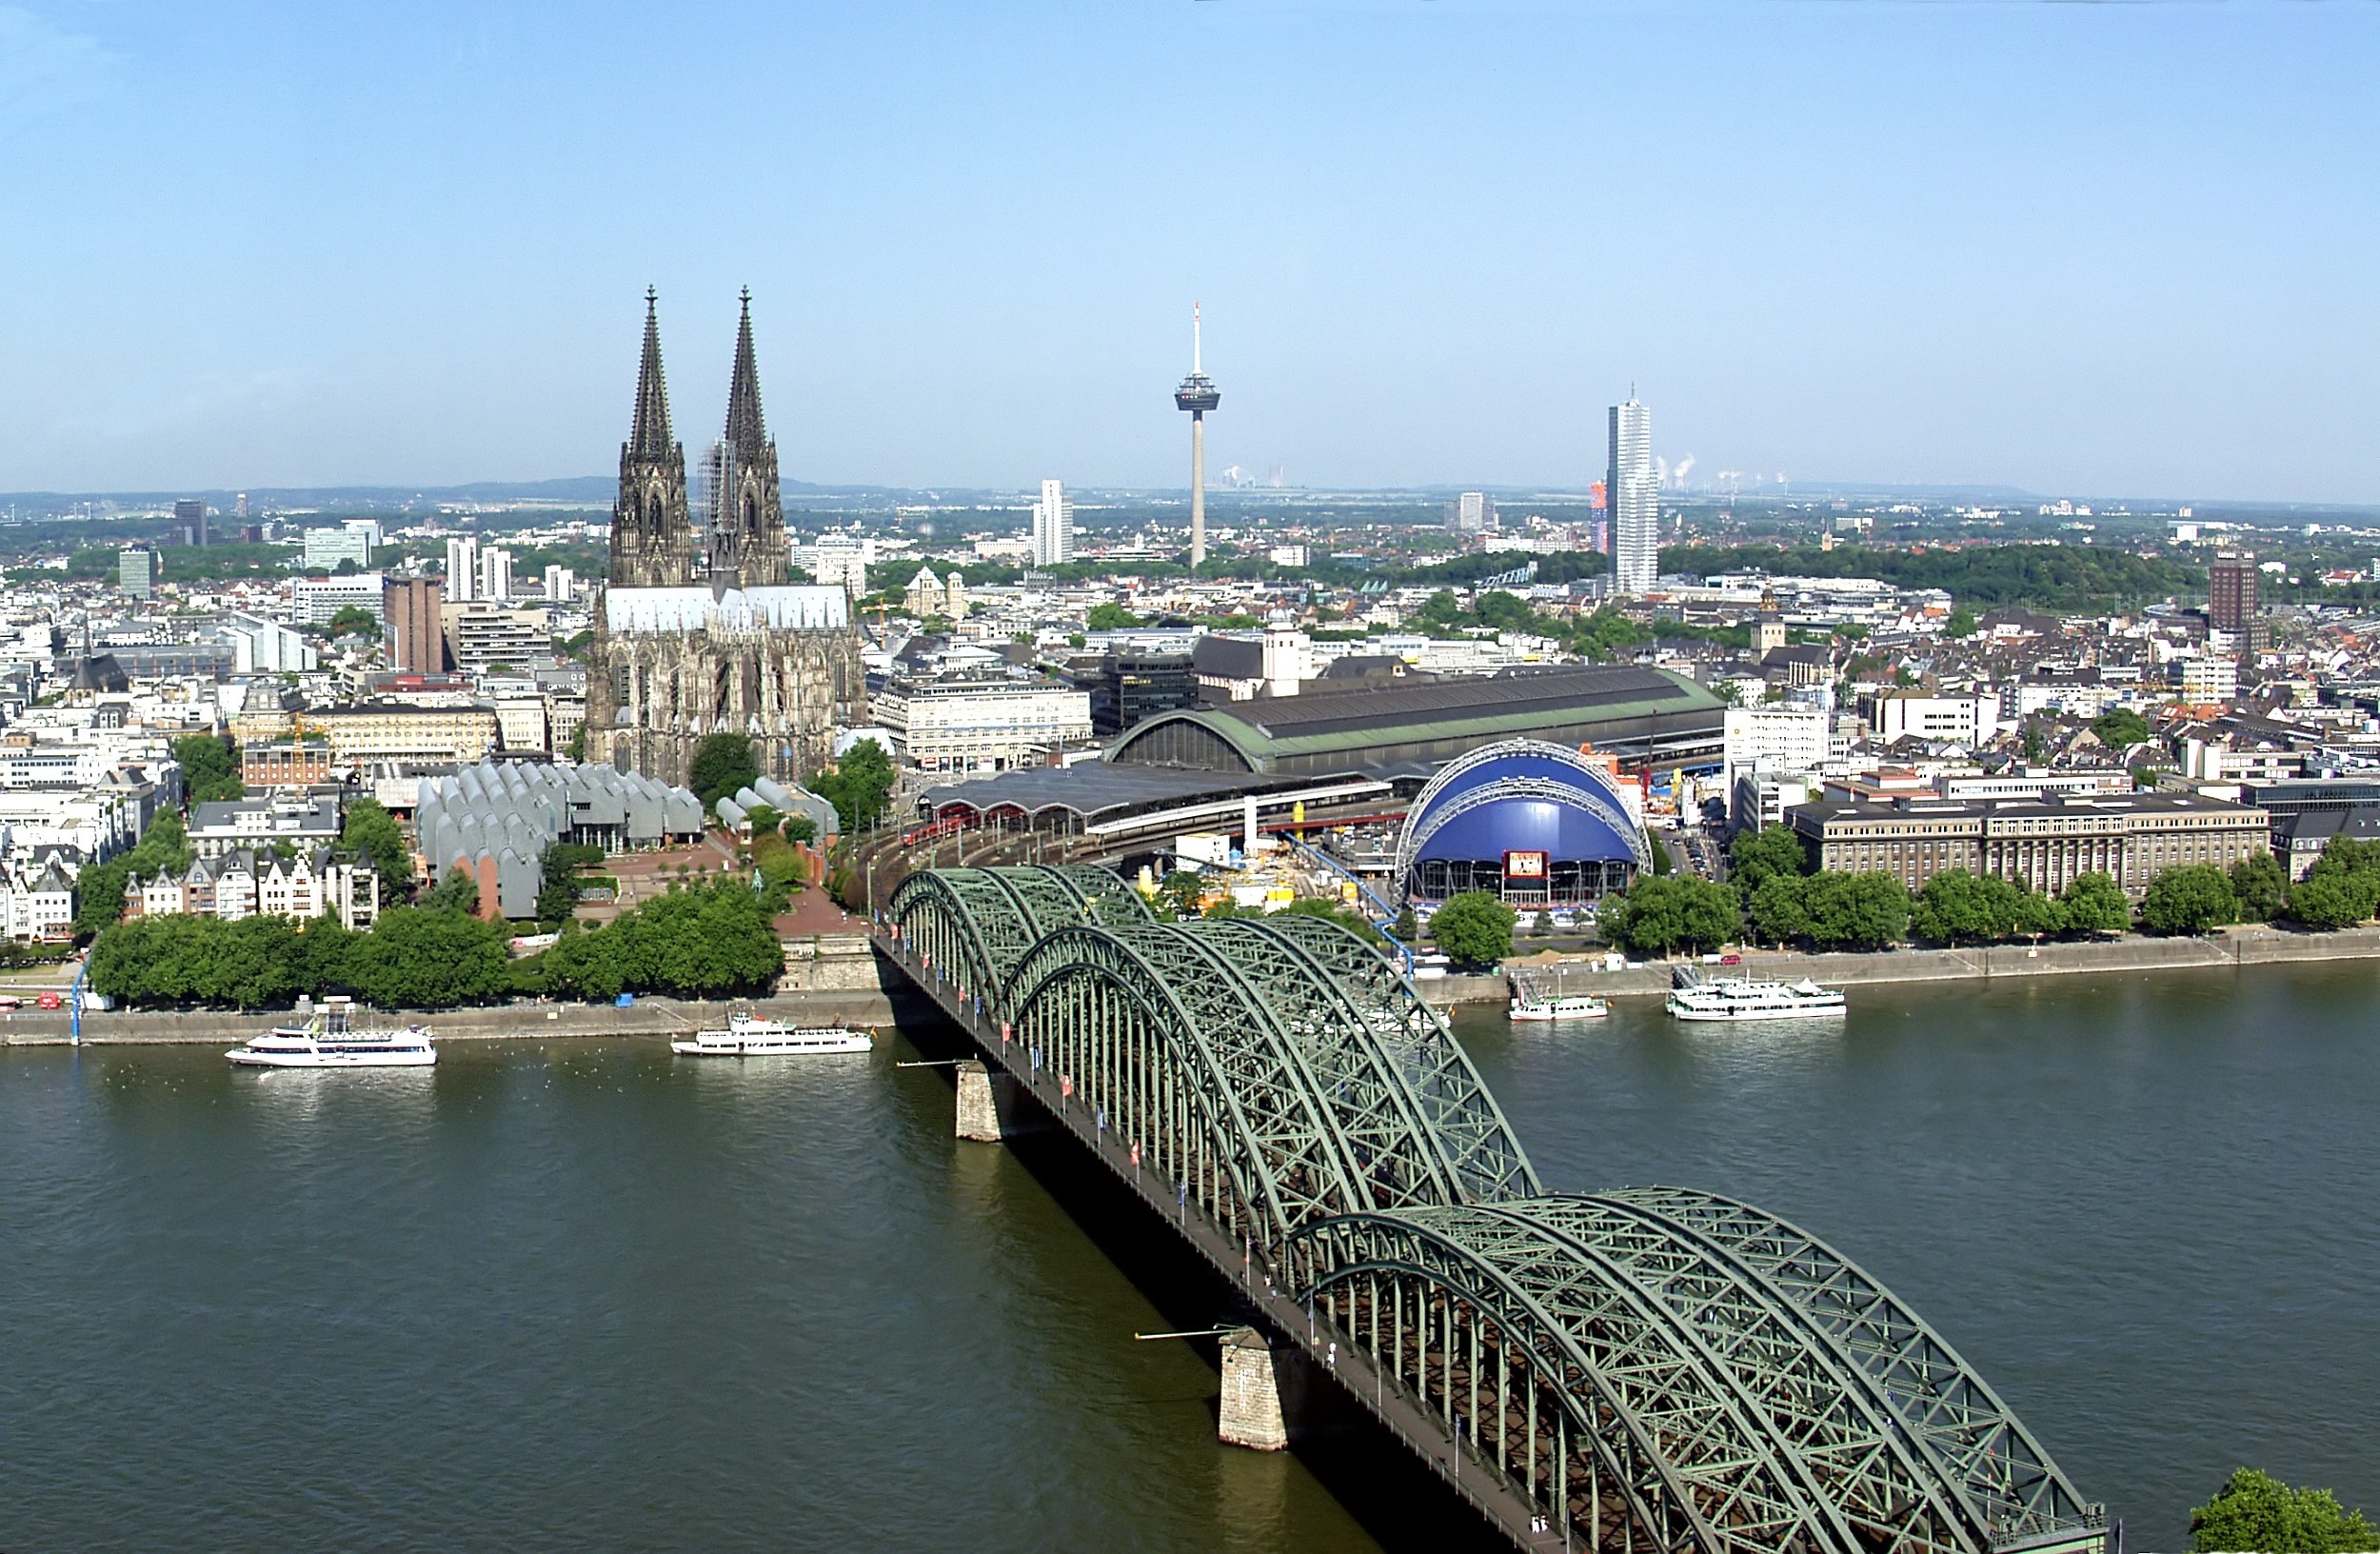 Hohenzollernbrücke , HD Wallpaper & Backgrounds